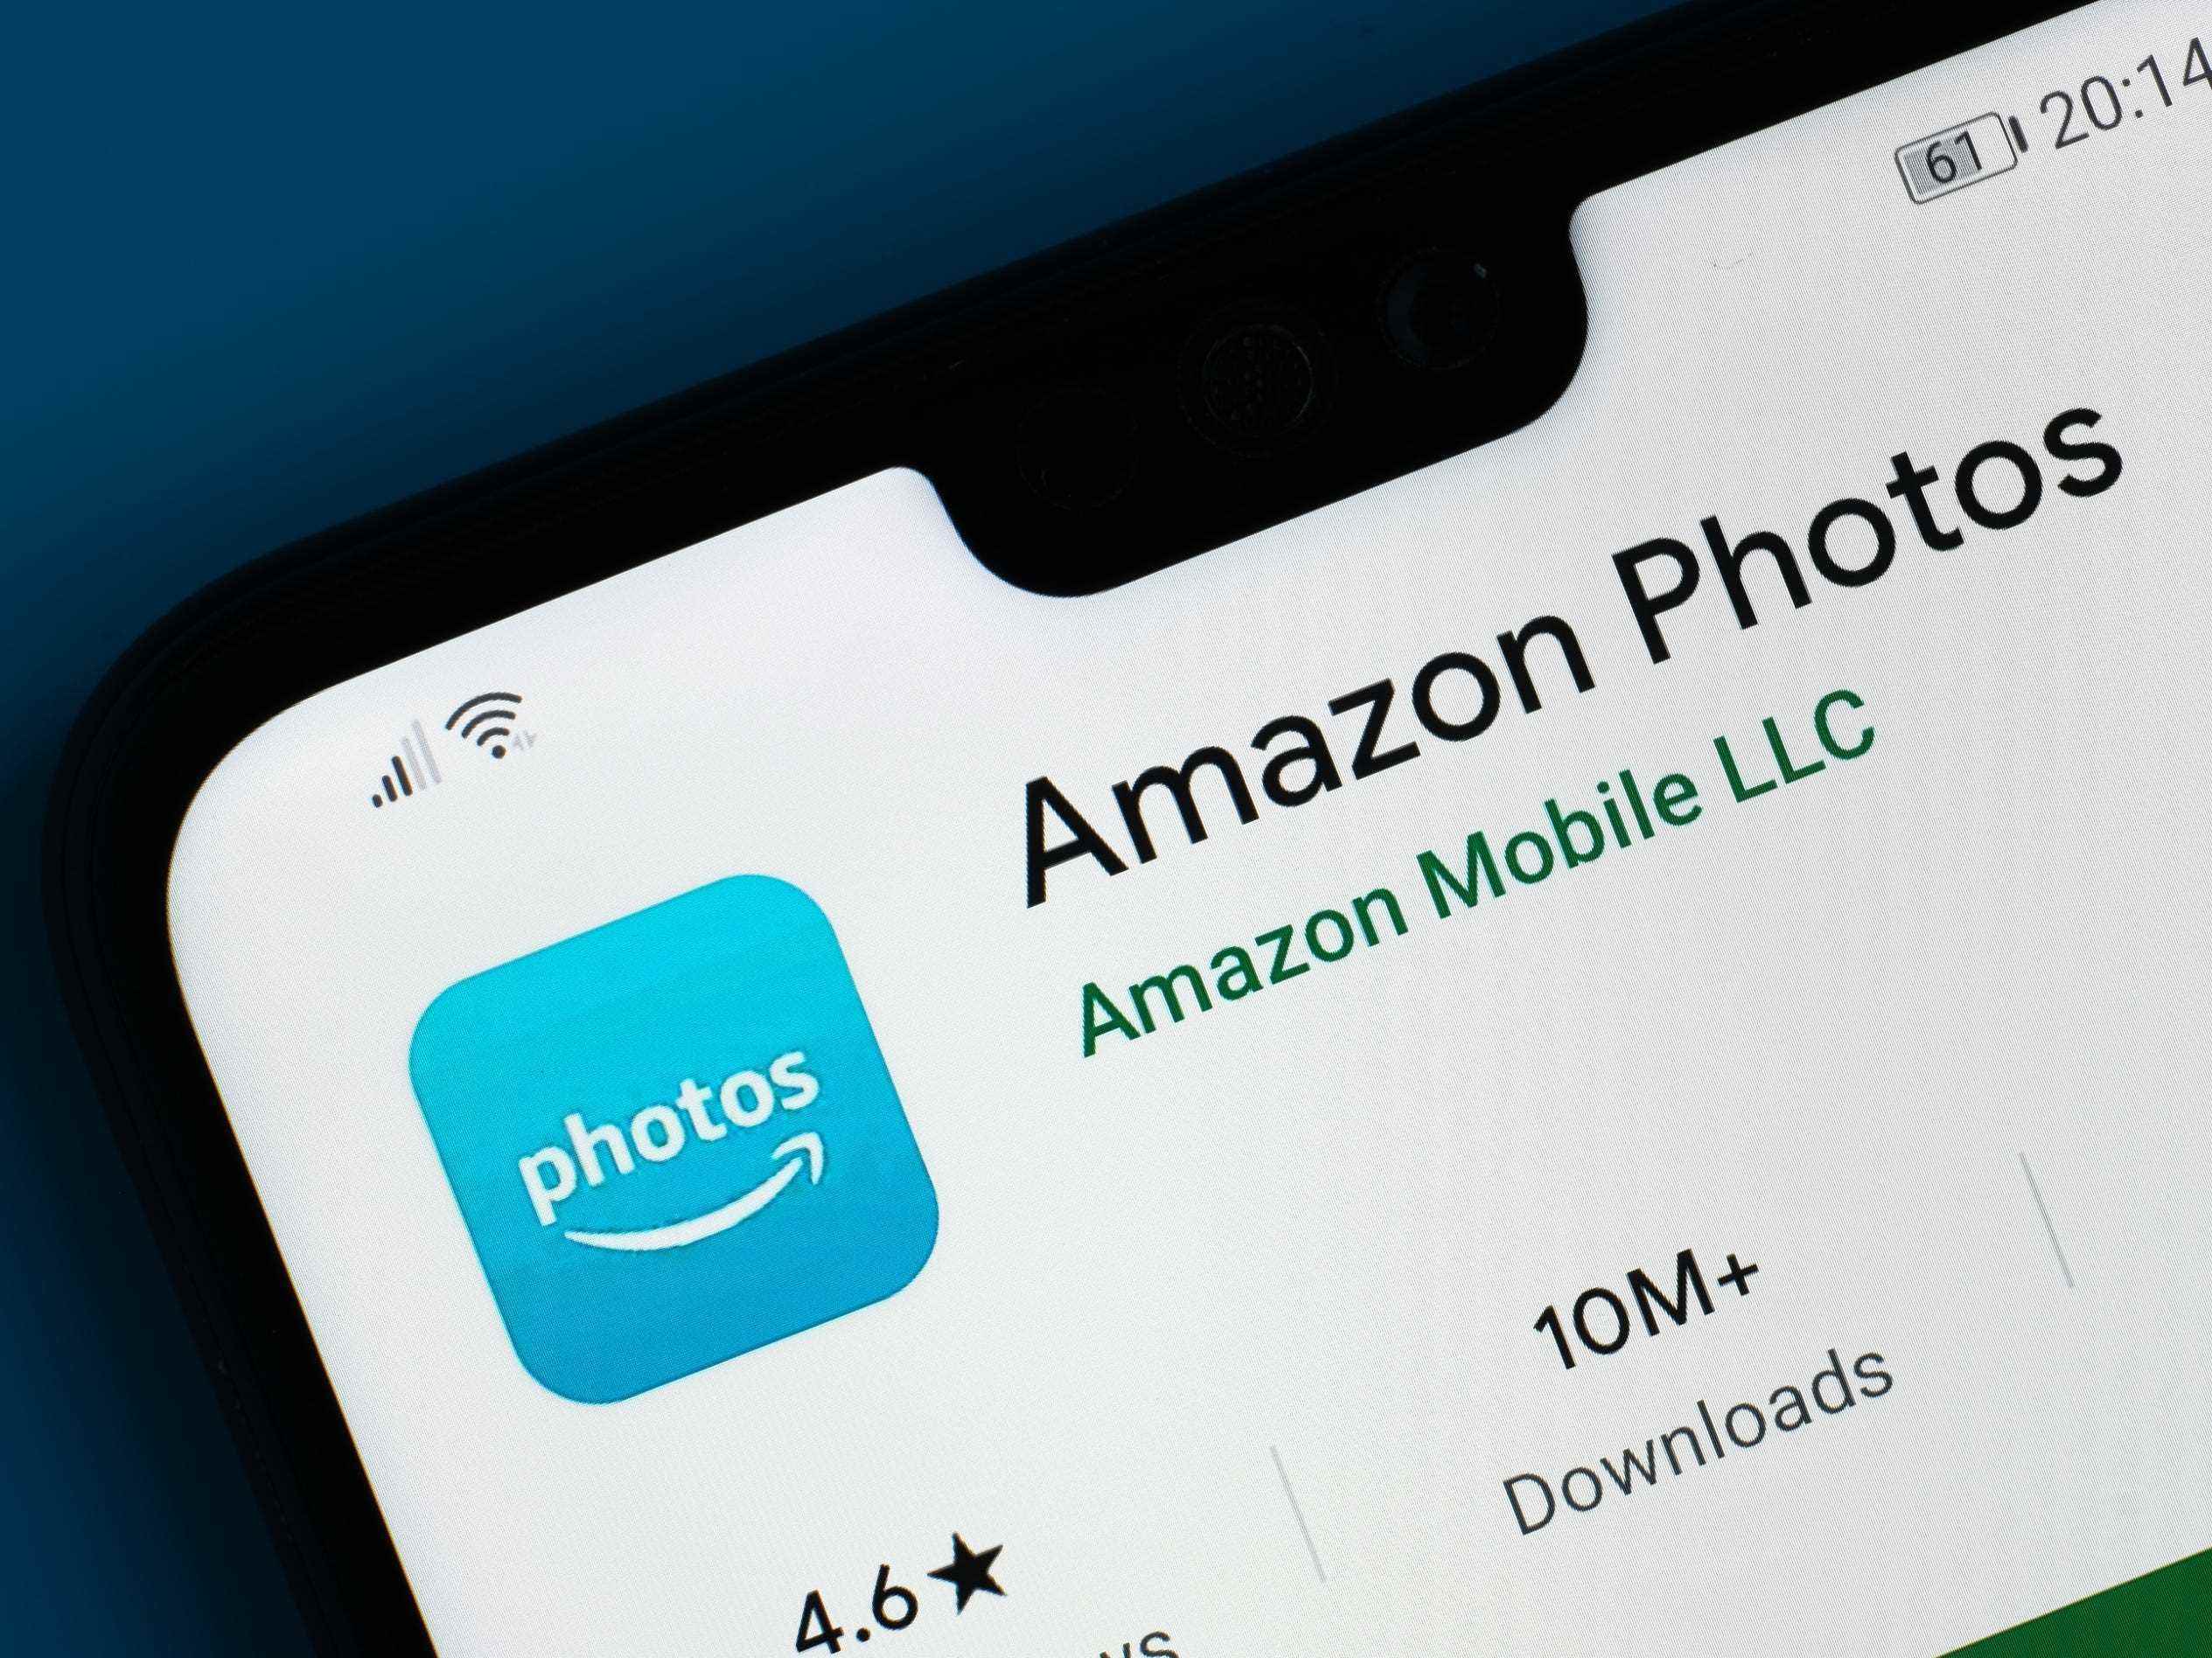 Die Informationsseite für die Amazon Photos-App auf einem Android-Telefon.